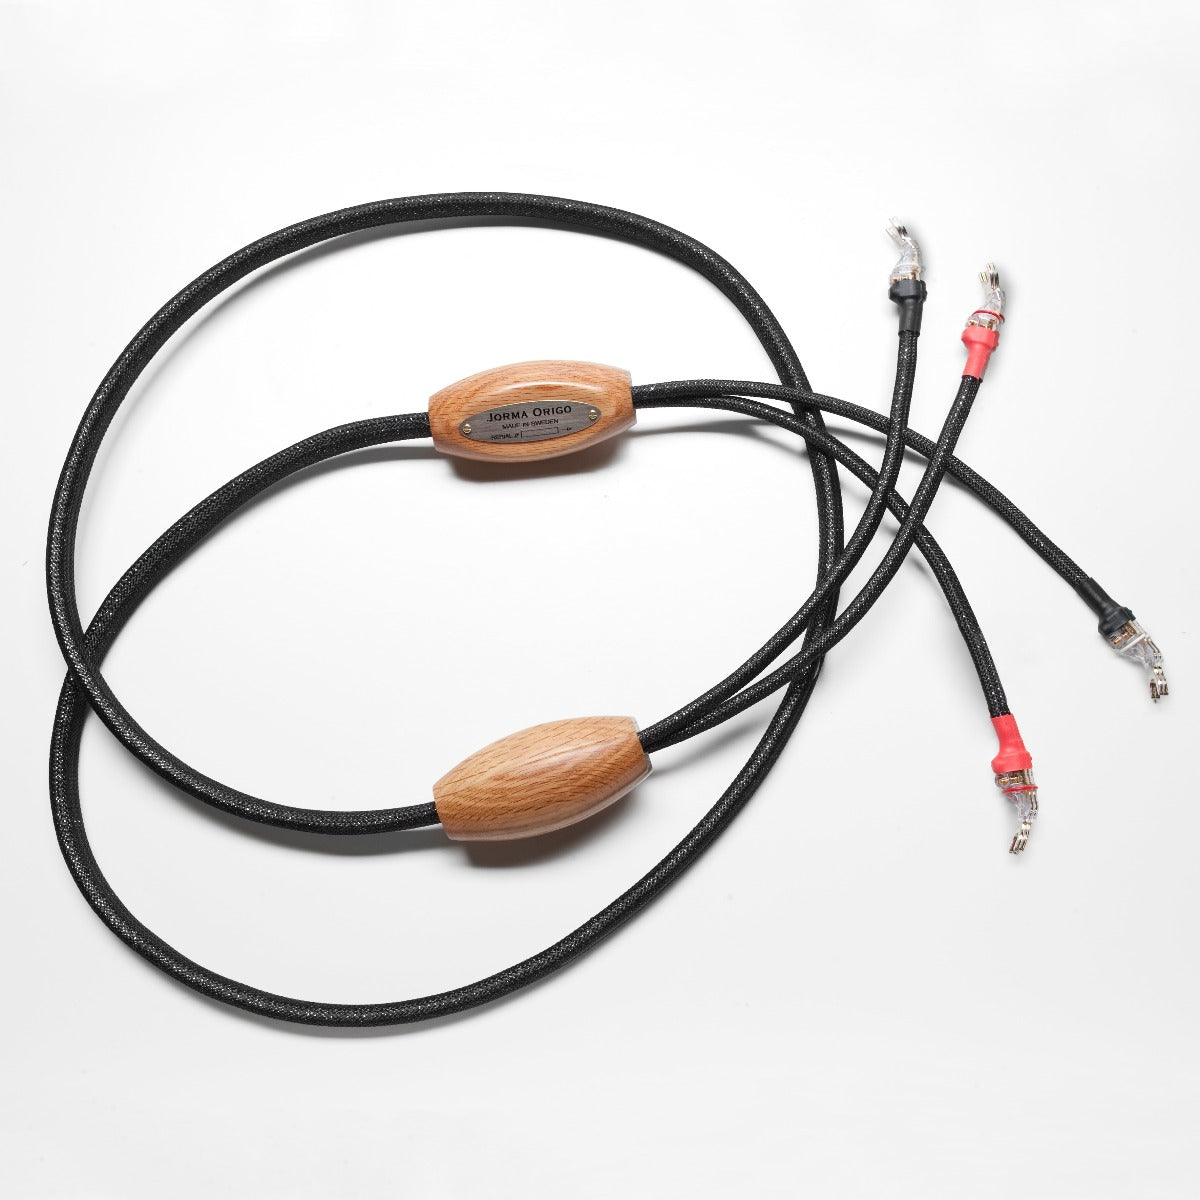 Jorma Design Origo Speaker Cable (Pair)